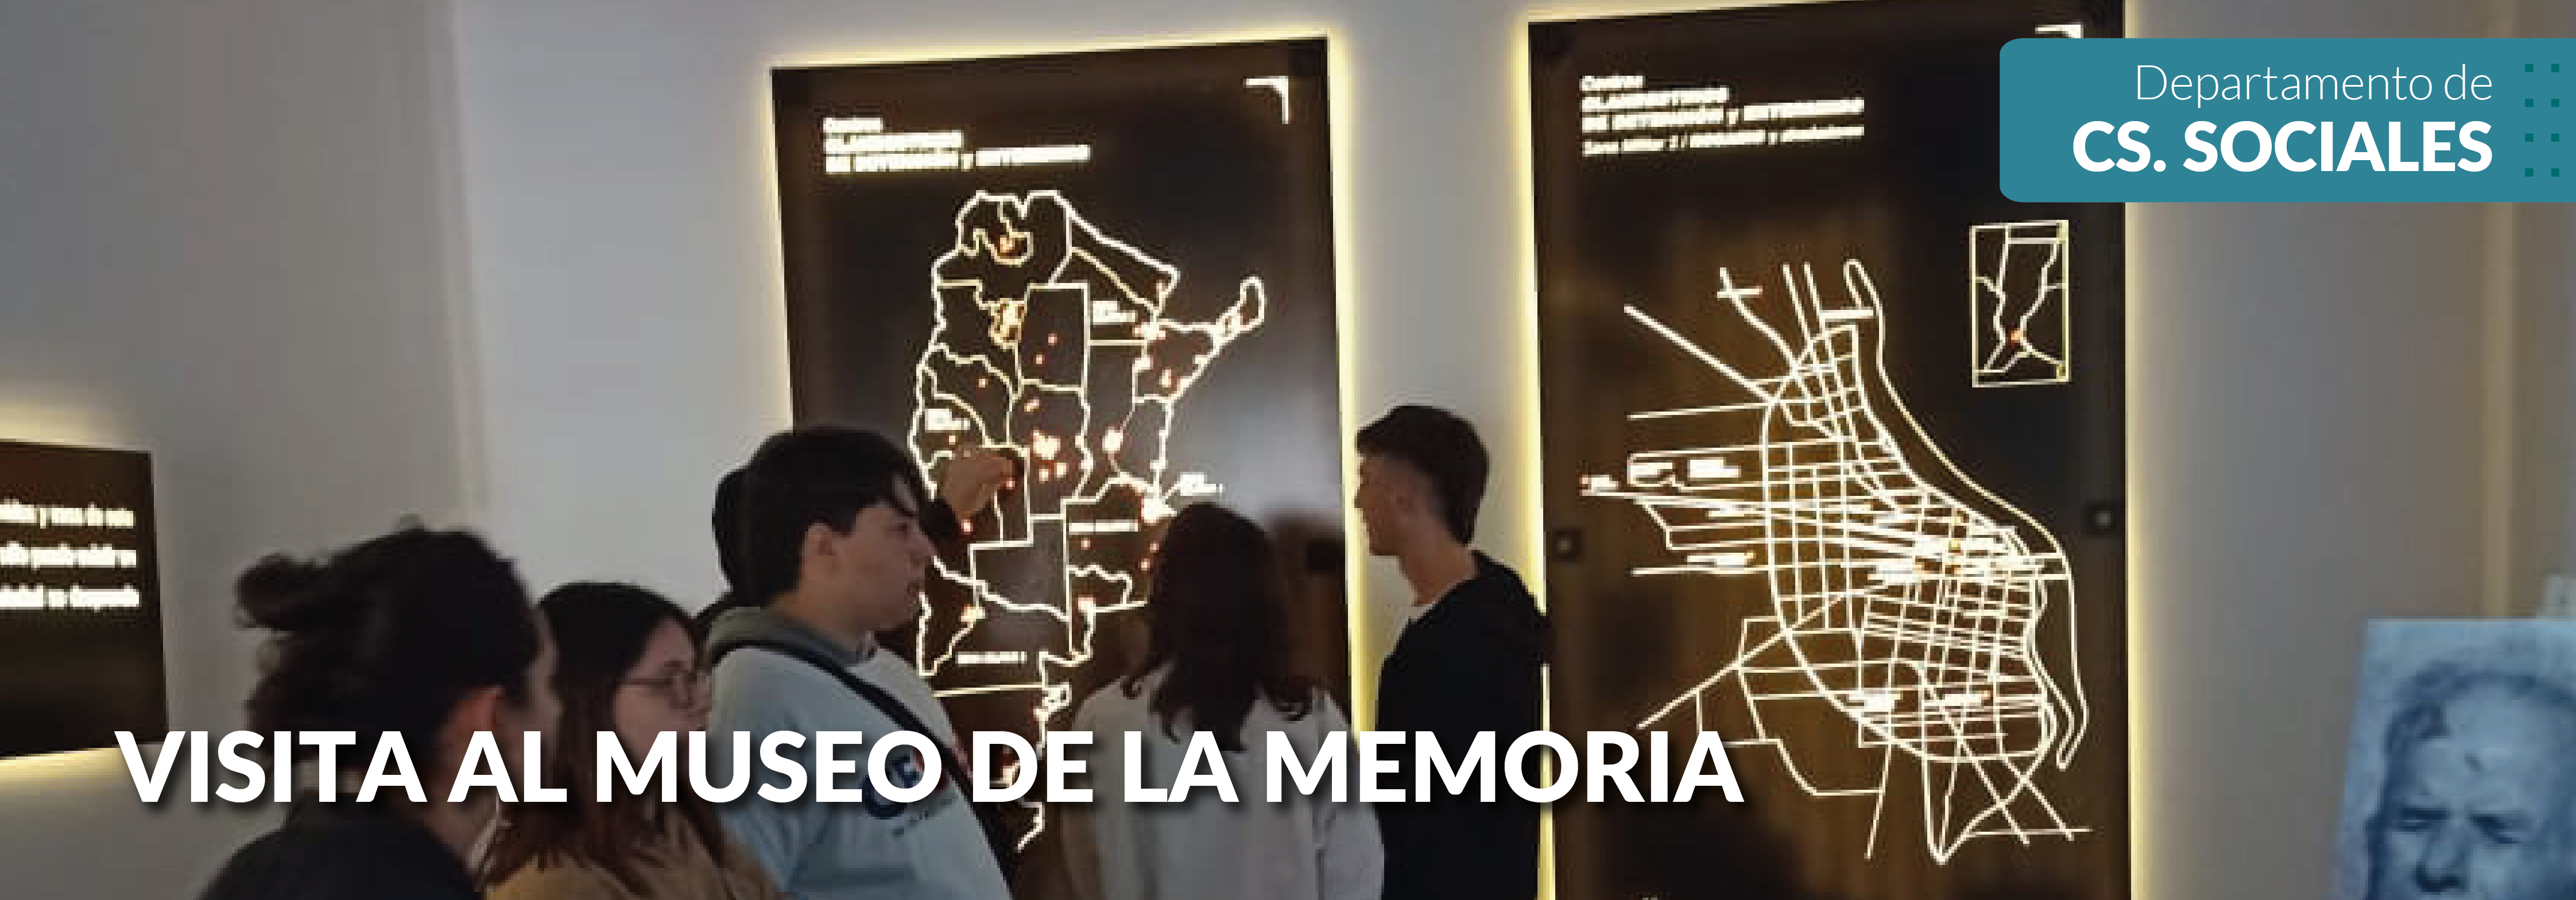 Visita al Museo de la Memoria